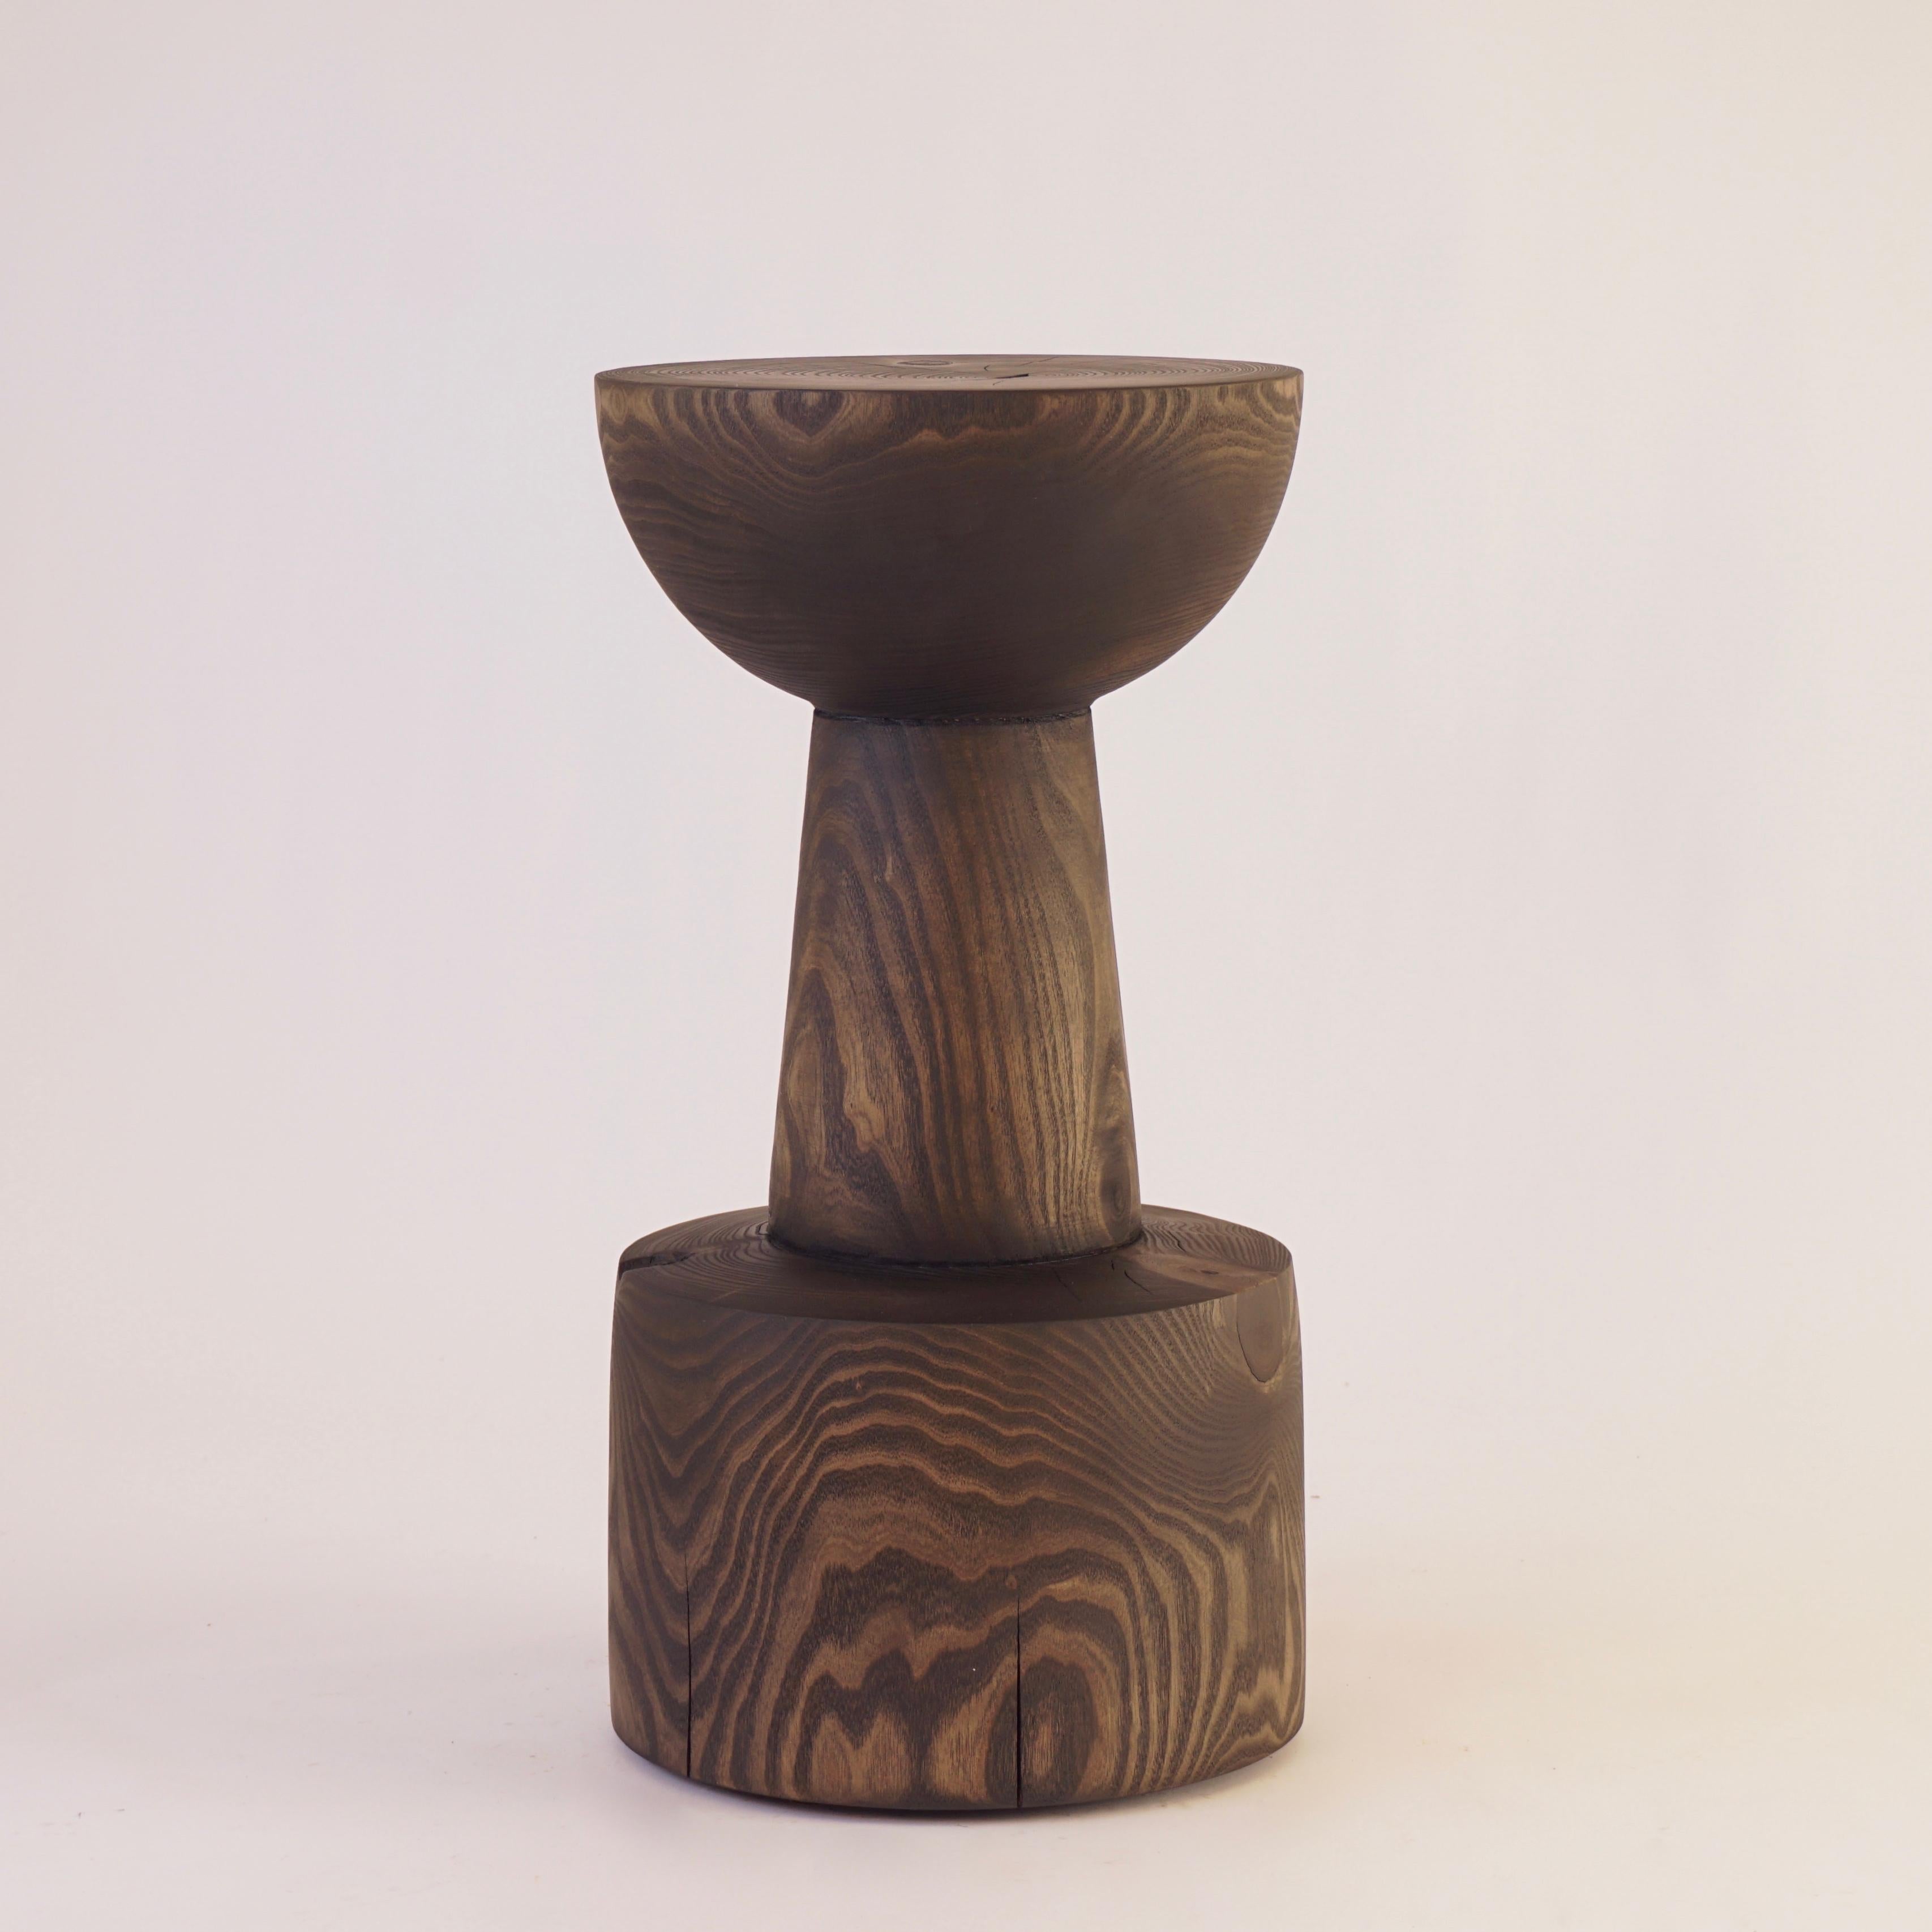 Diese Sonderanfertigung des Sockeltisches #6 aus ebonisiertem Catalpa ist eine der zehn Originalformen der Lehrecke Pedestal Collection von 1996. Das Besondere an diesem Stück ist die Qualität des Holzes: Catalpa ist ein schnell wachsender Baum, der